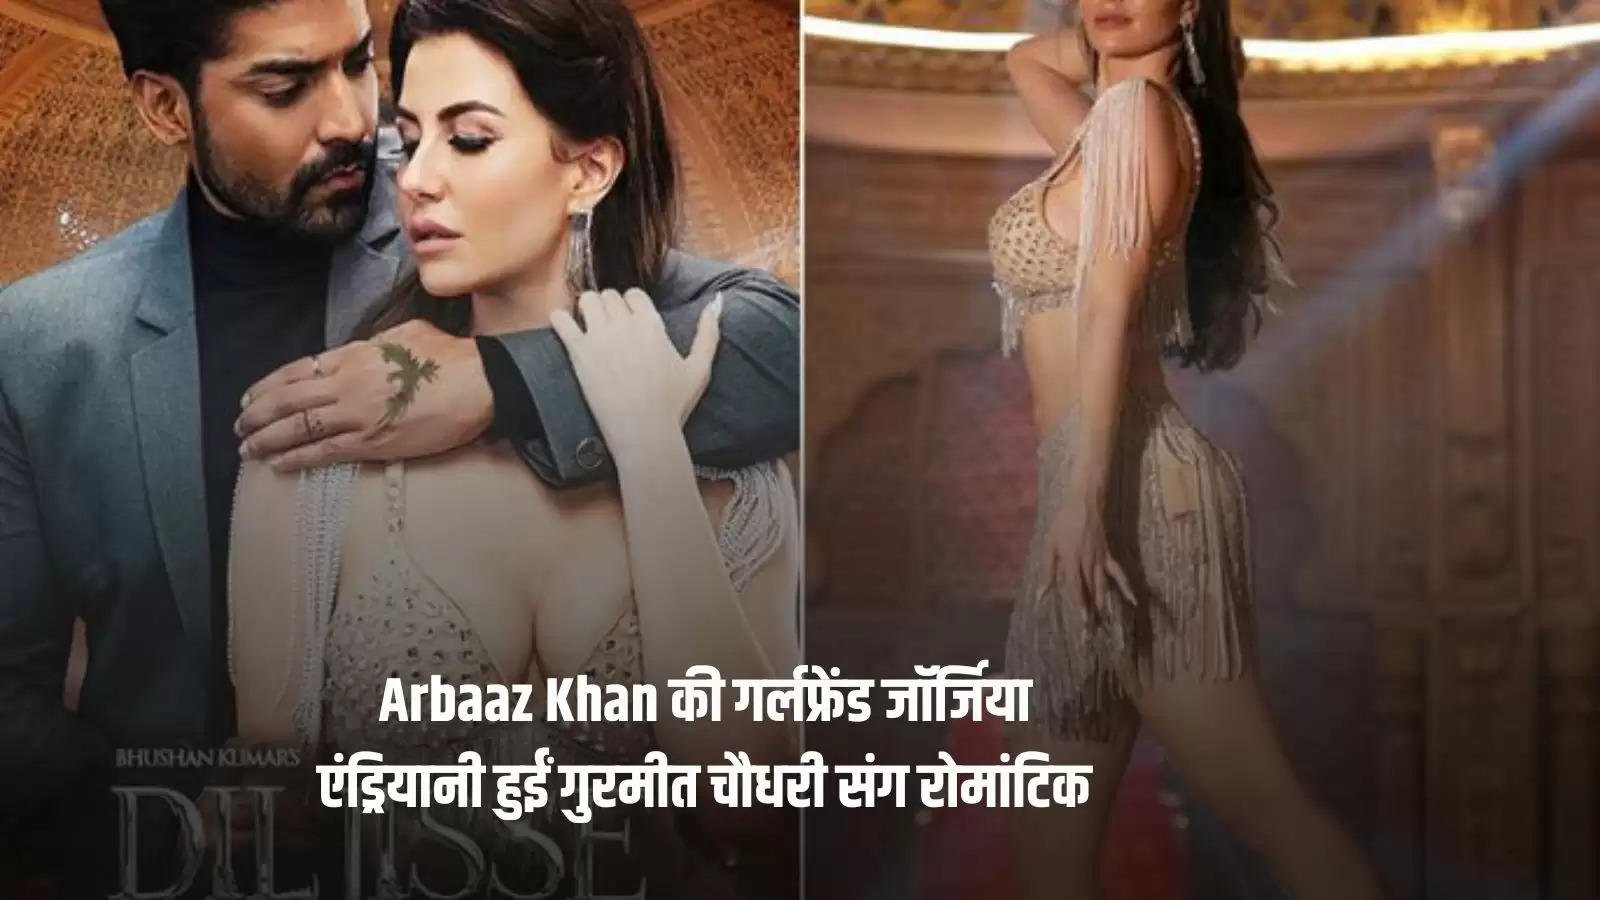 Arbaaz Khan की गर्लफ्रेंड जॉर्जिया एंड्रियानी हुईं गुरमीत चौधरी संग रोमांटिक